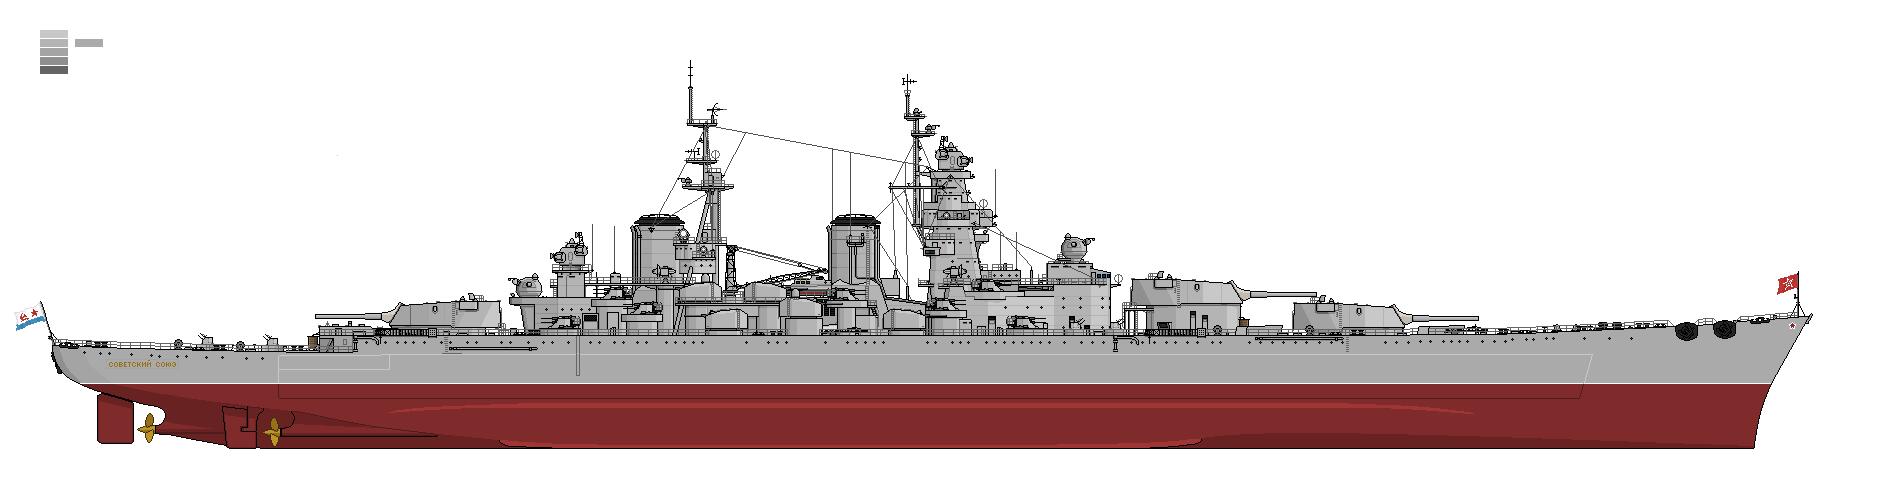 苏联号战列舰,1956状态.下次更新,我会发布1957状态.